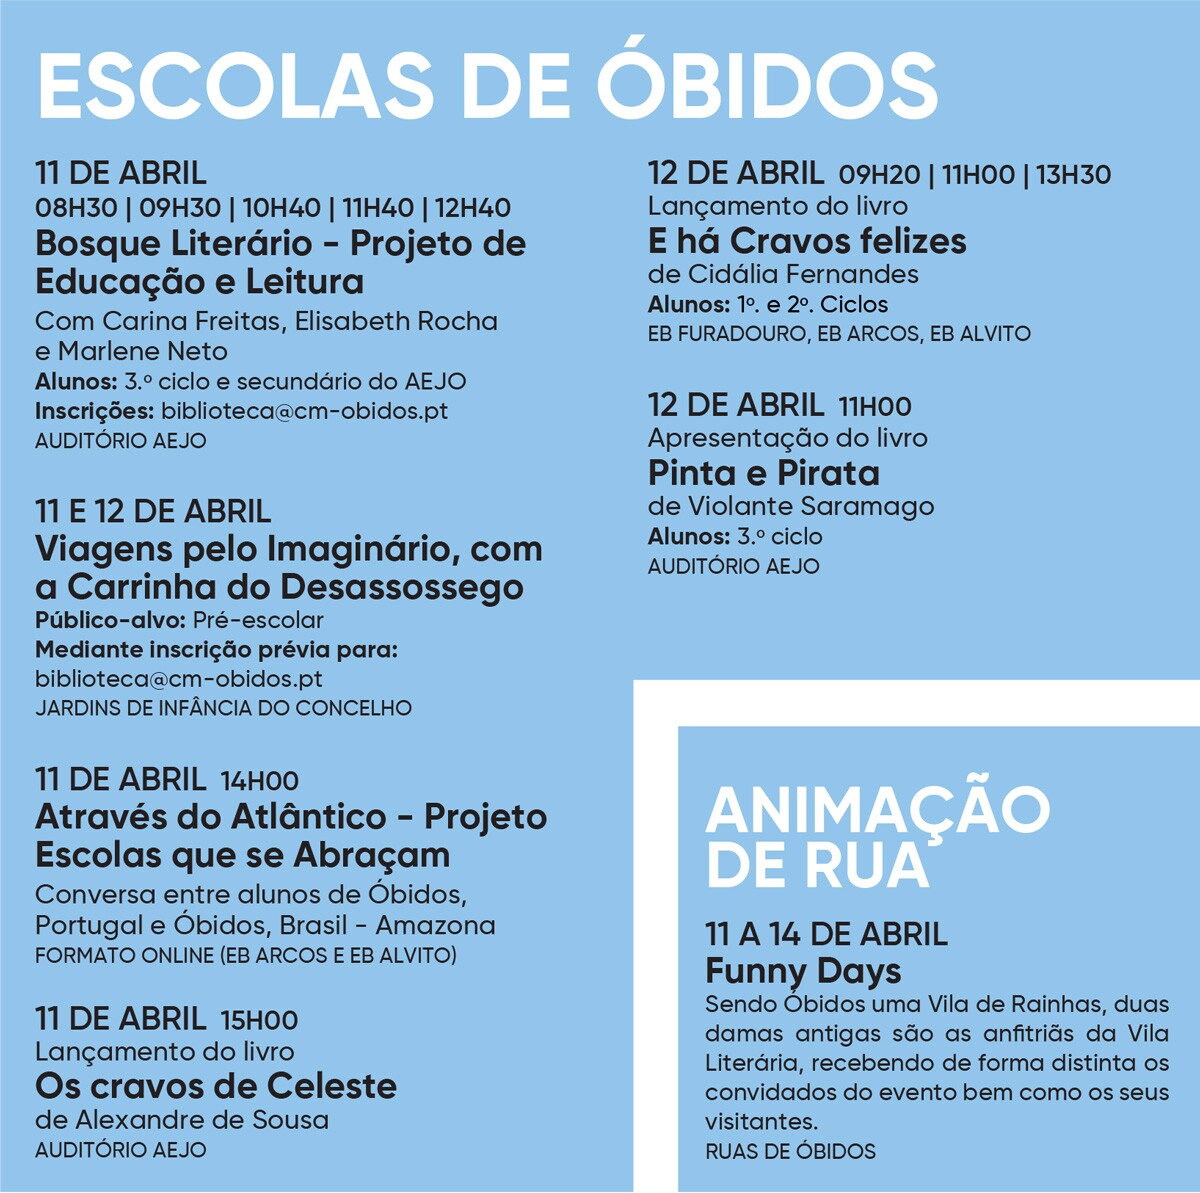 Escolas de Óbidos | Eventos de Rua